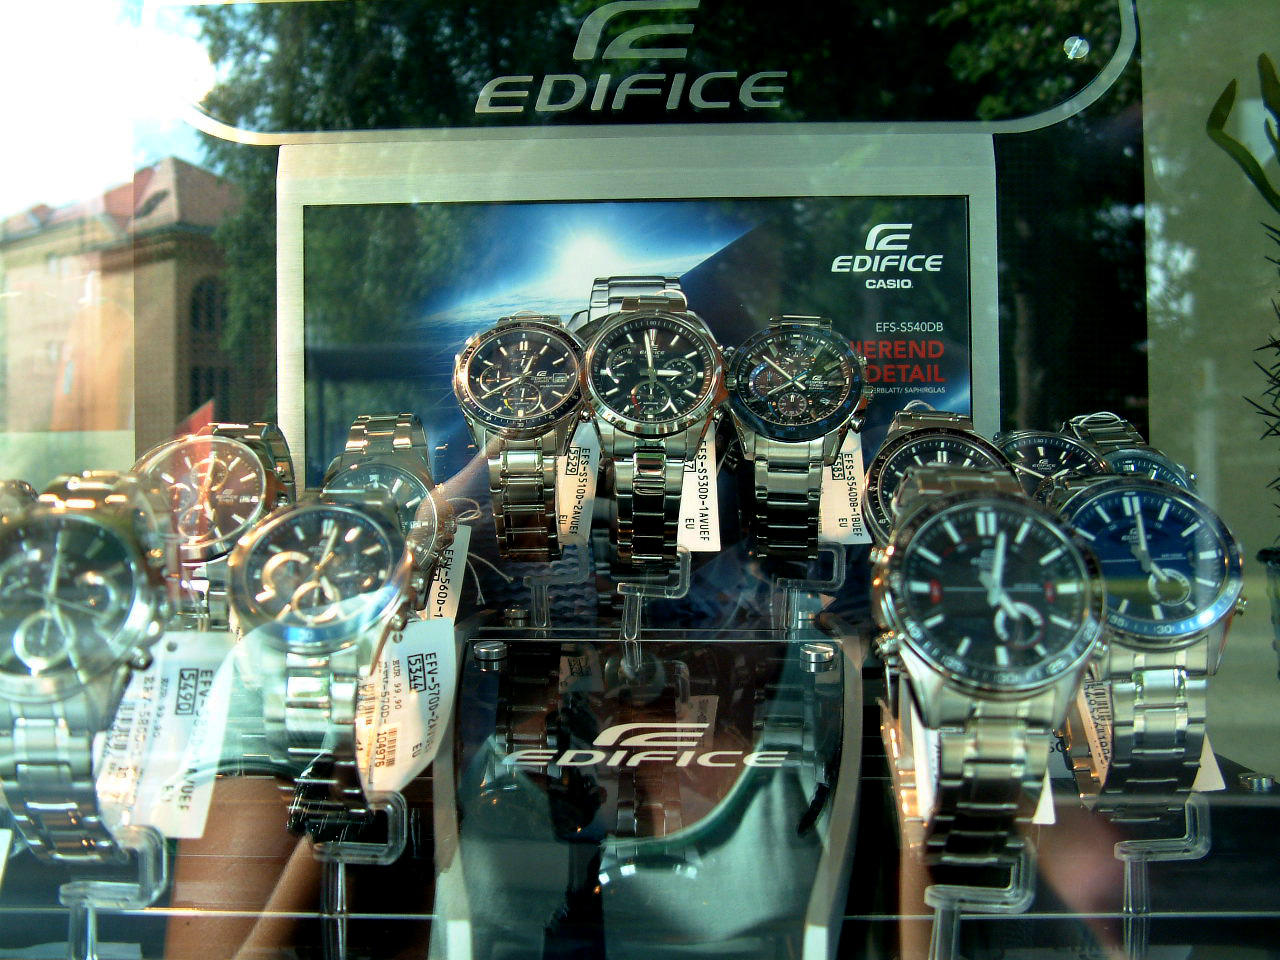 Die neuen Modelle der Serie EDIFICE von Casio sind eingetroffen.